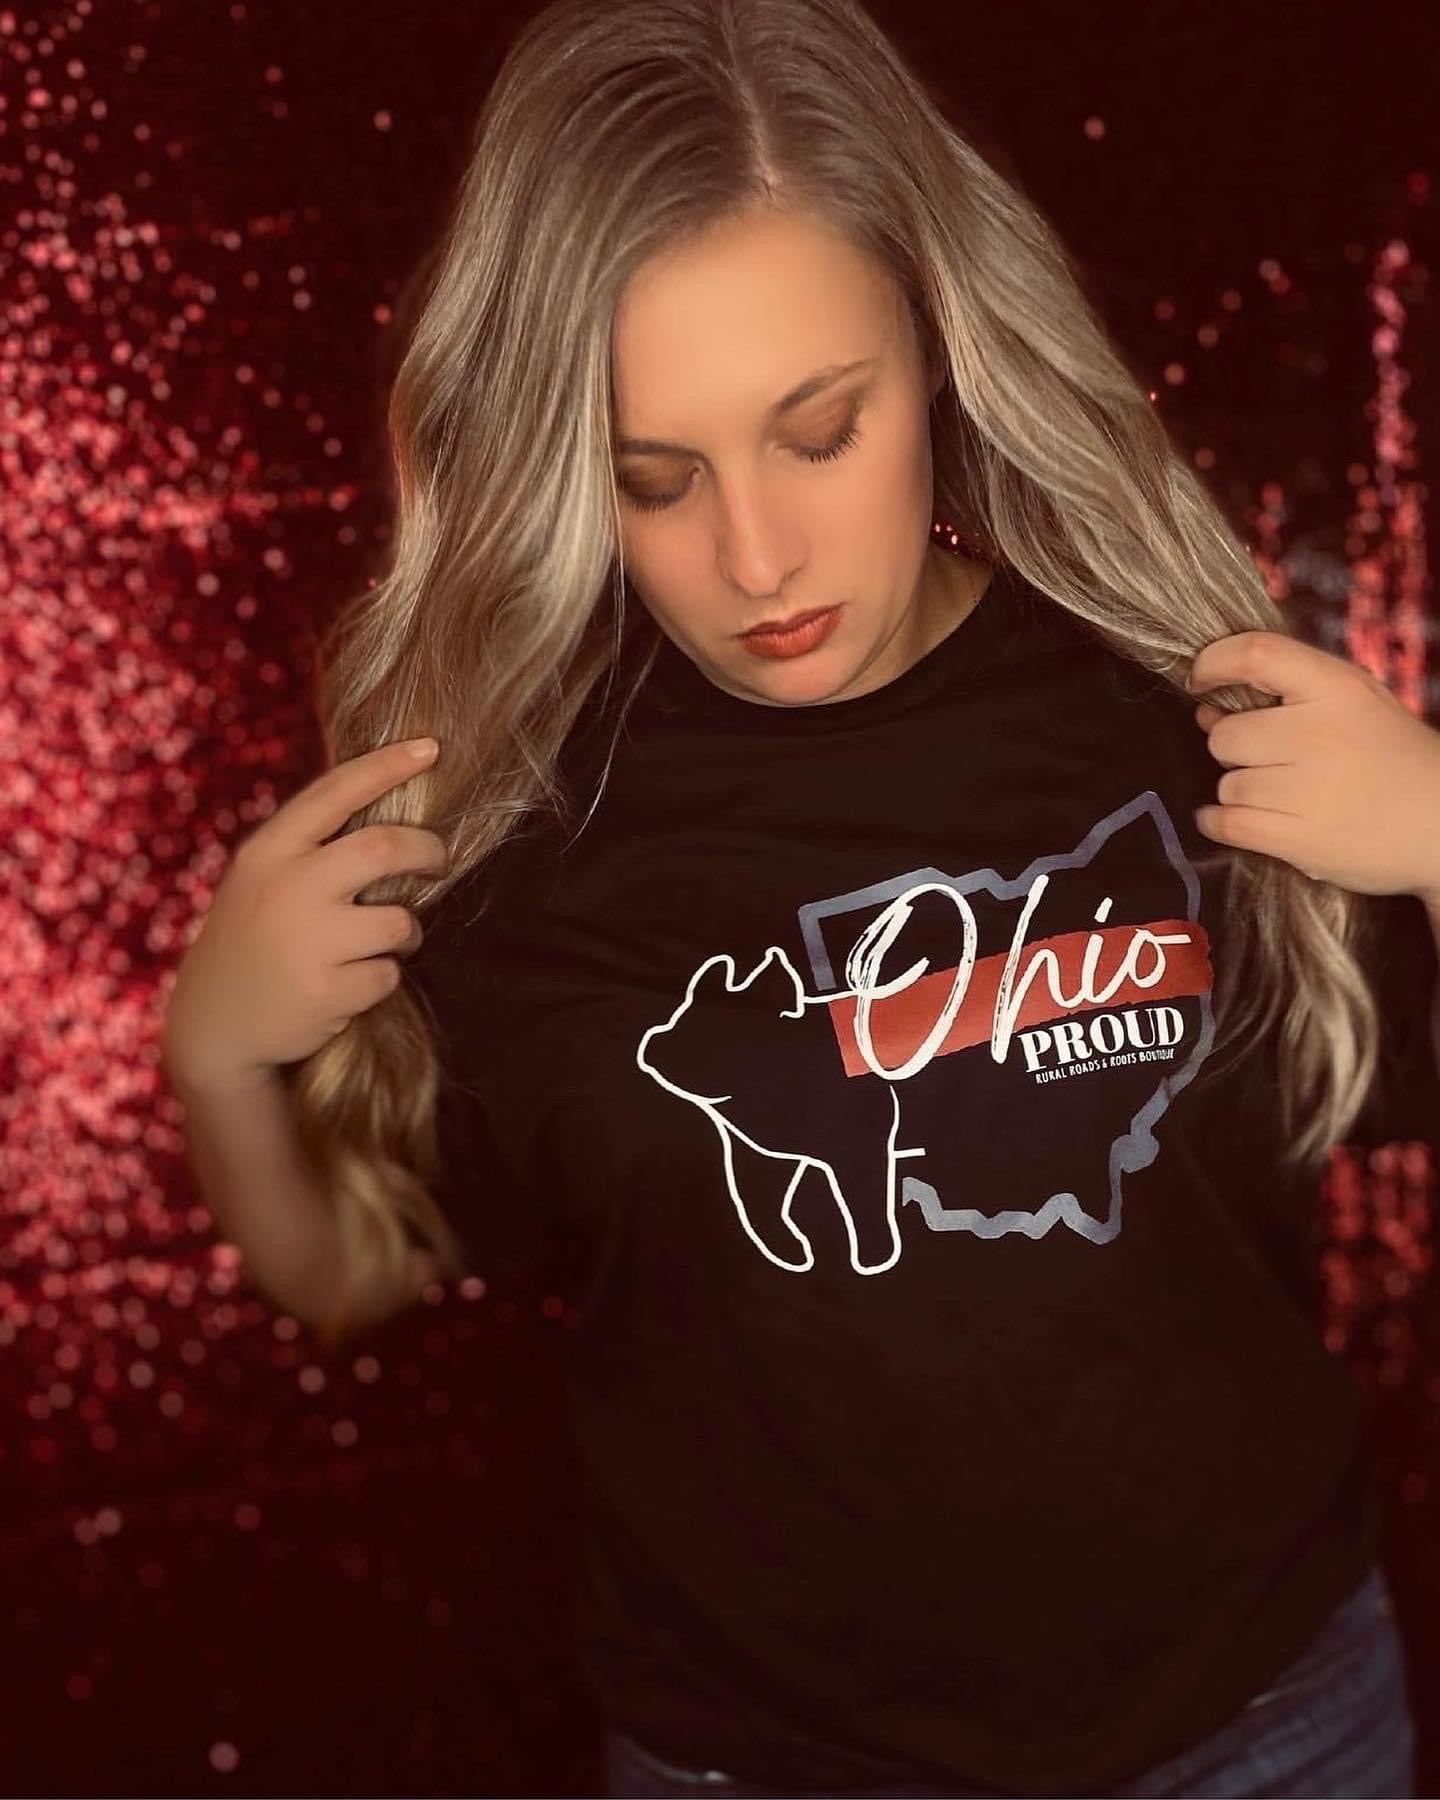 Ohio Proud "Swine" Graphic Tee